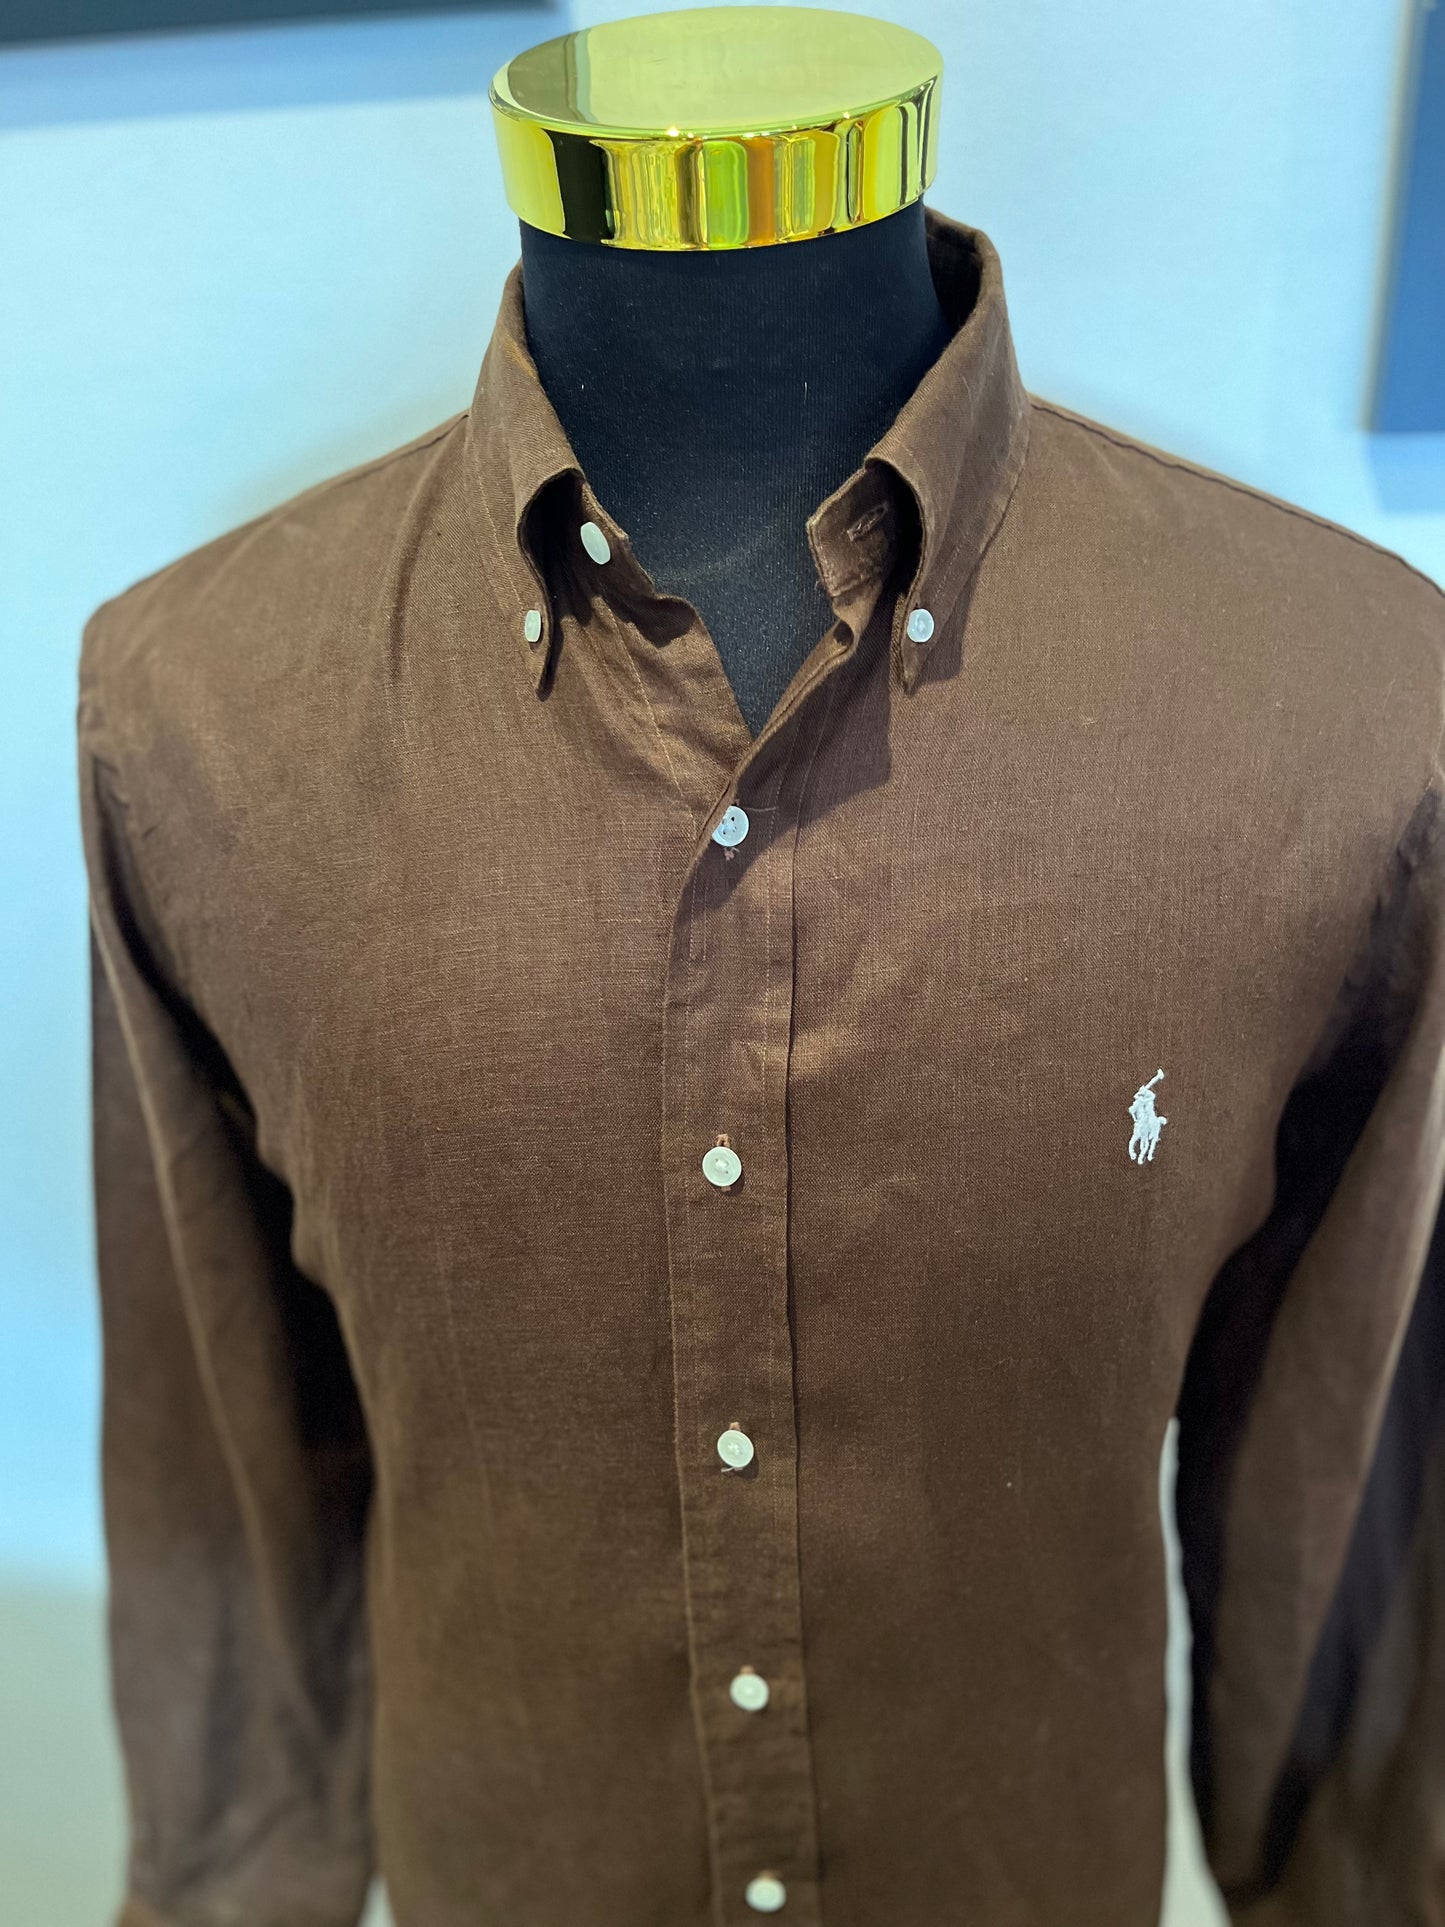 Ralph Lauren 100% Linen Brown Shirt Size Large